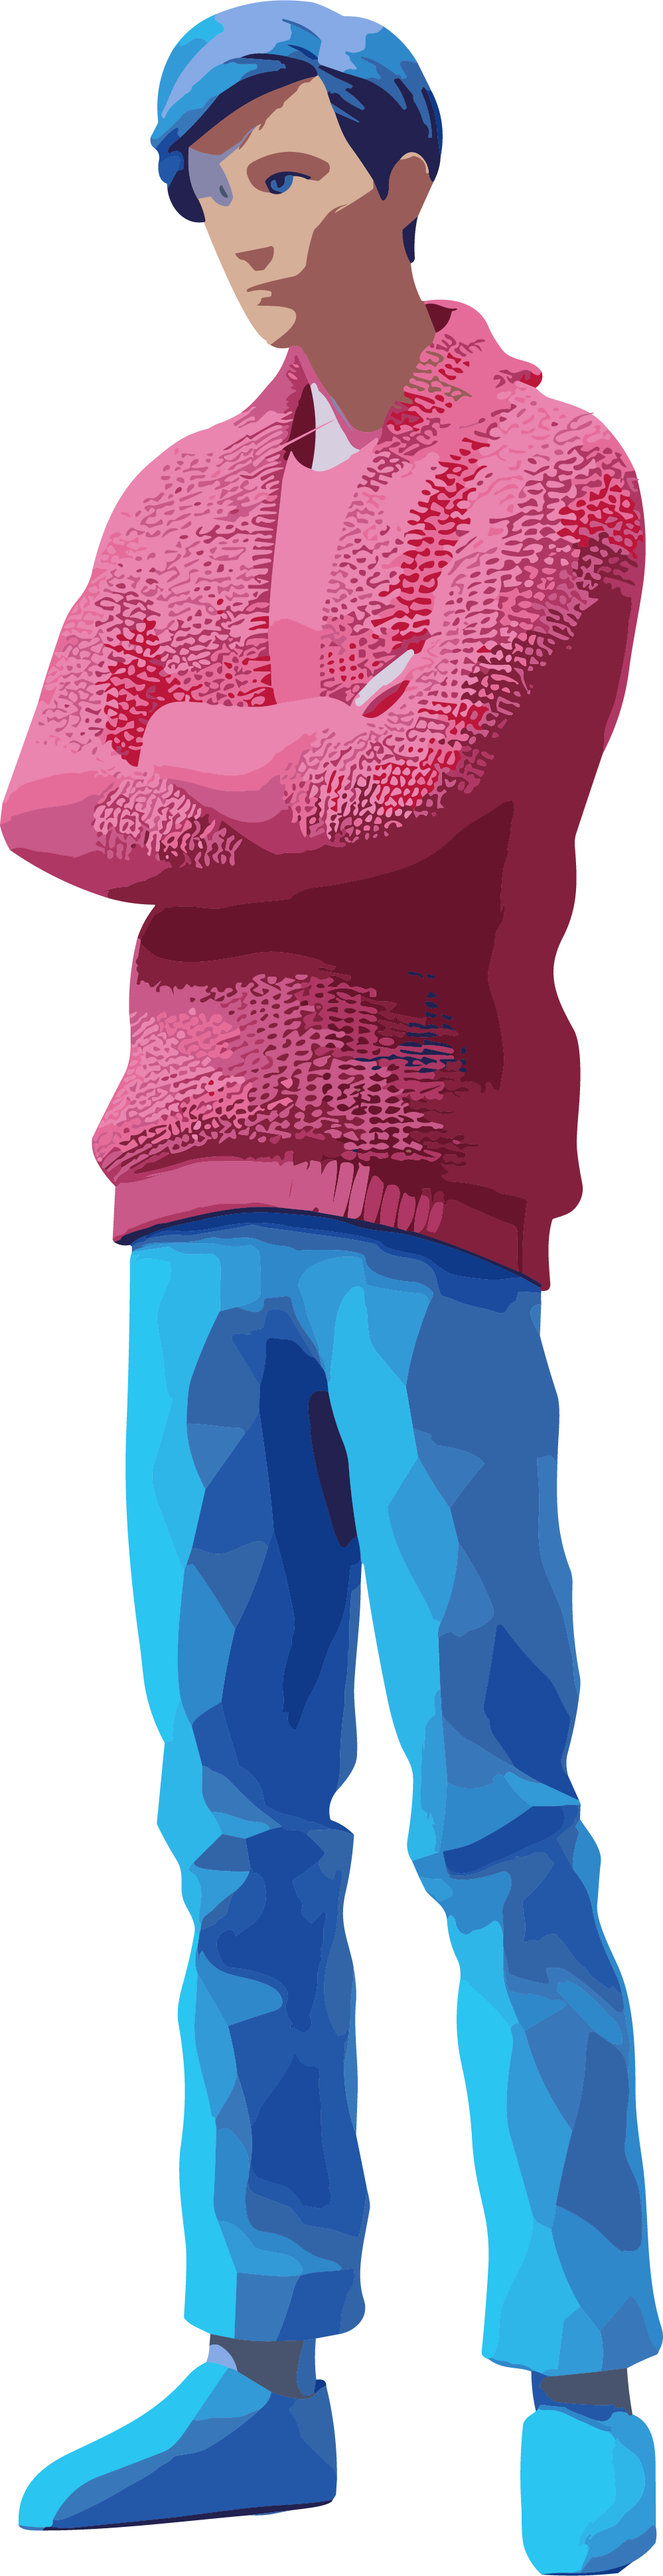 深粉与天蓝色款式的人物穿着毛衣的3D模型素材